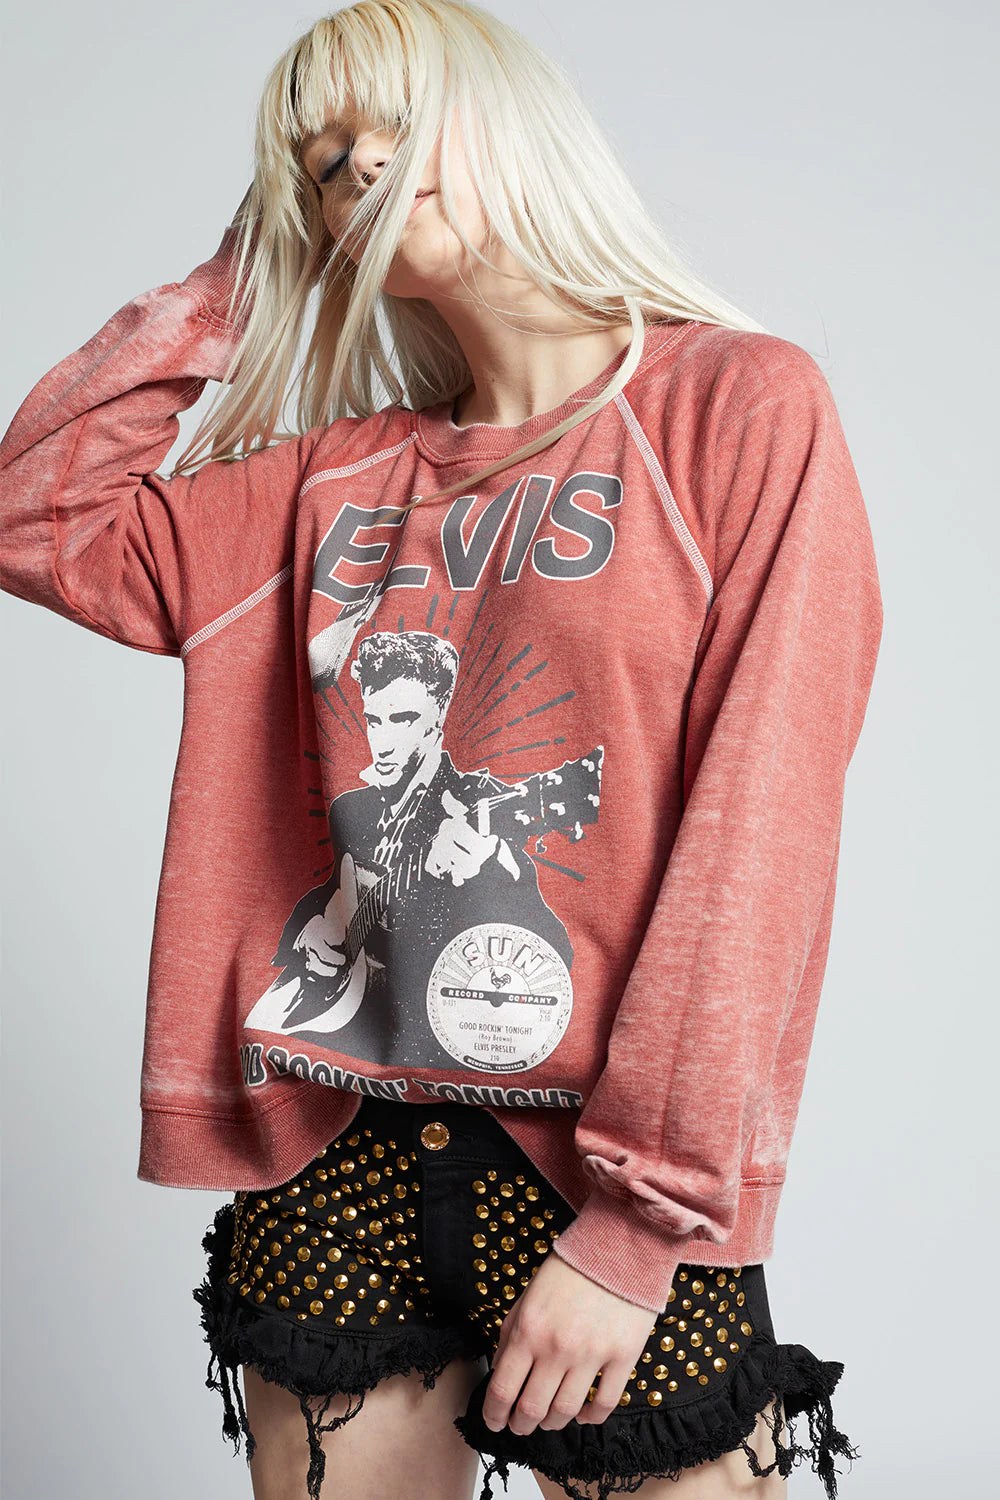 Sun Studios X Elvis Presley Rockin Sweatshirt by Recycled Karma